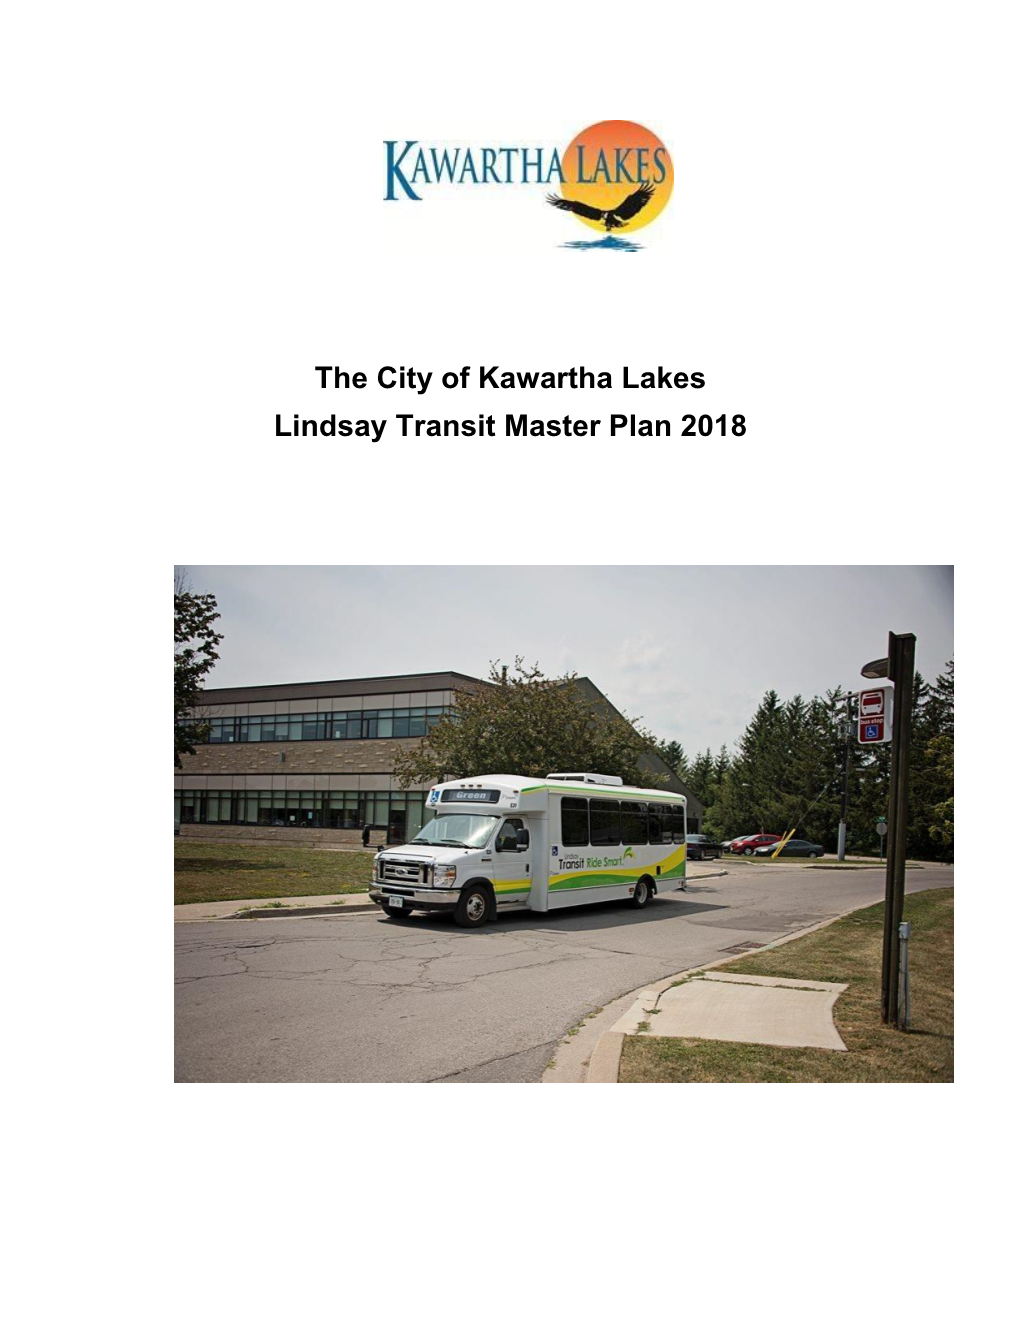 The City of Kawartha Lakes Lindsay Transit Master Plan 2018